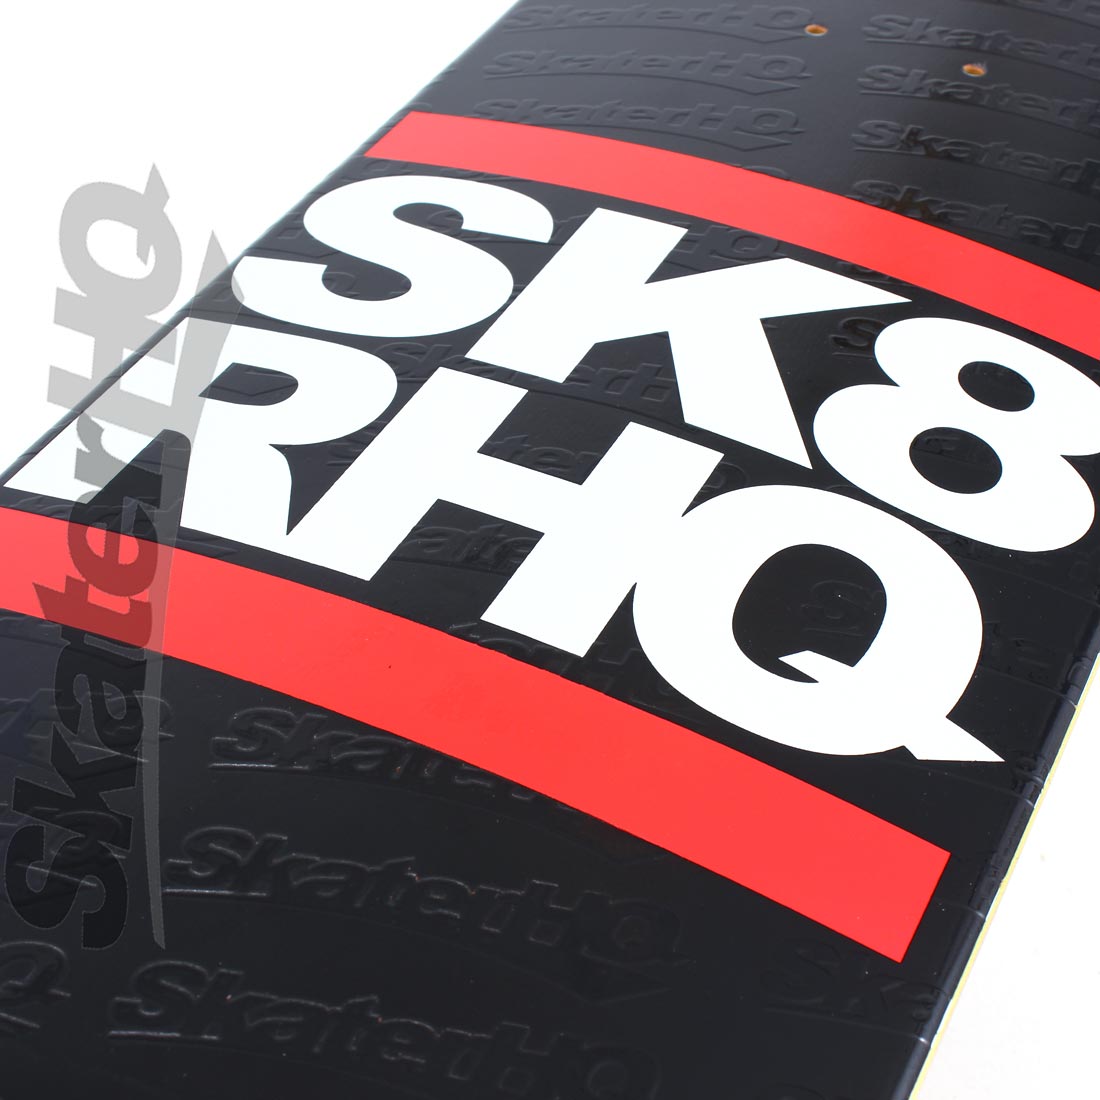 Skater HQ Stacked 7.25 Mini Deck Skateboard Decks Modern Street